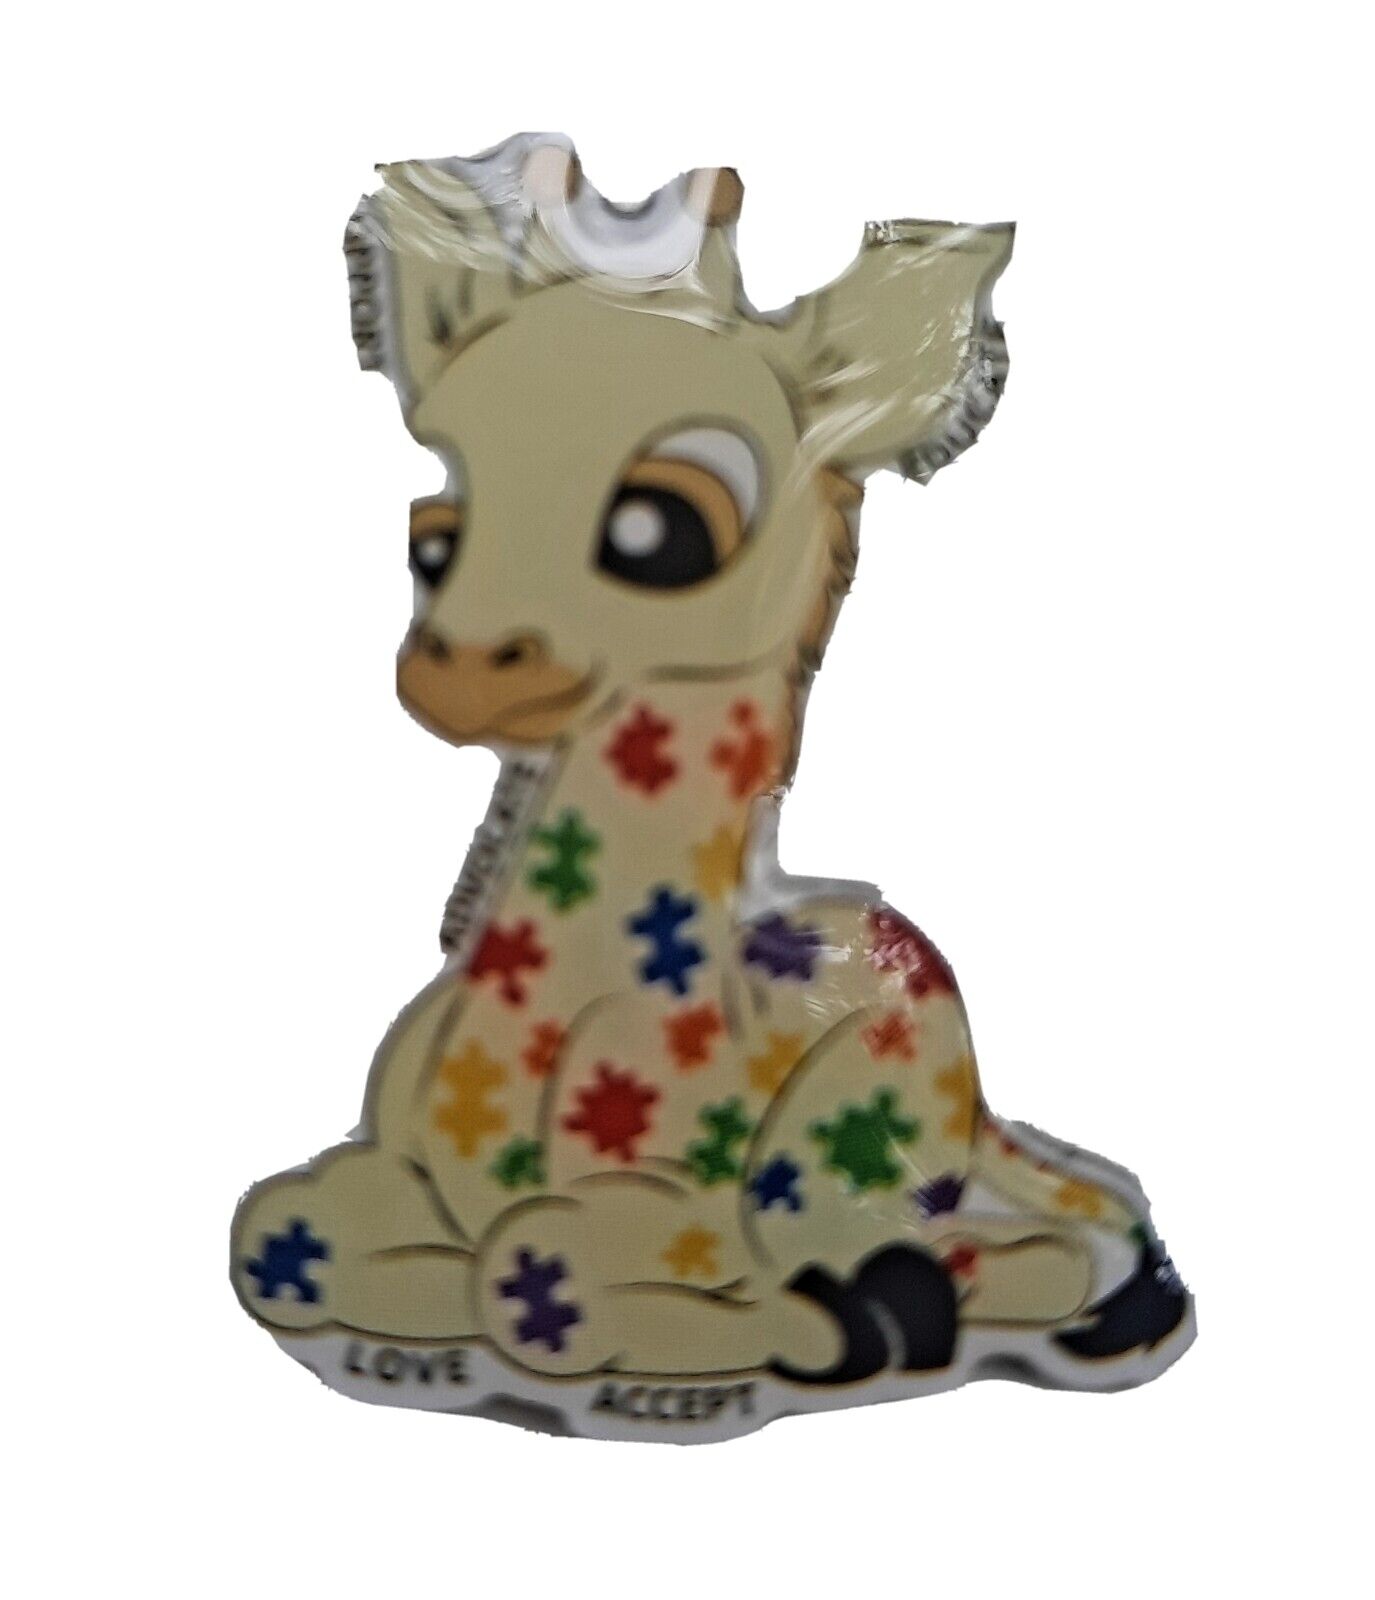 Autism Awareness Giraffe Amazon peccy pin